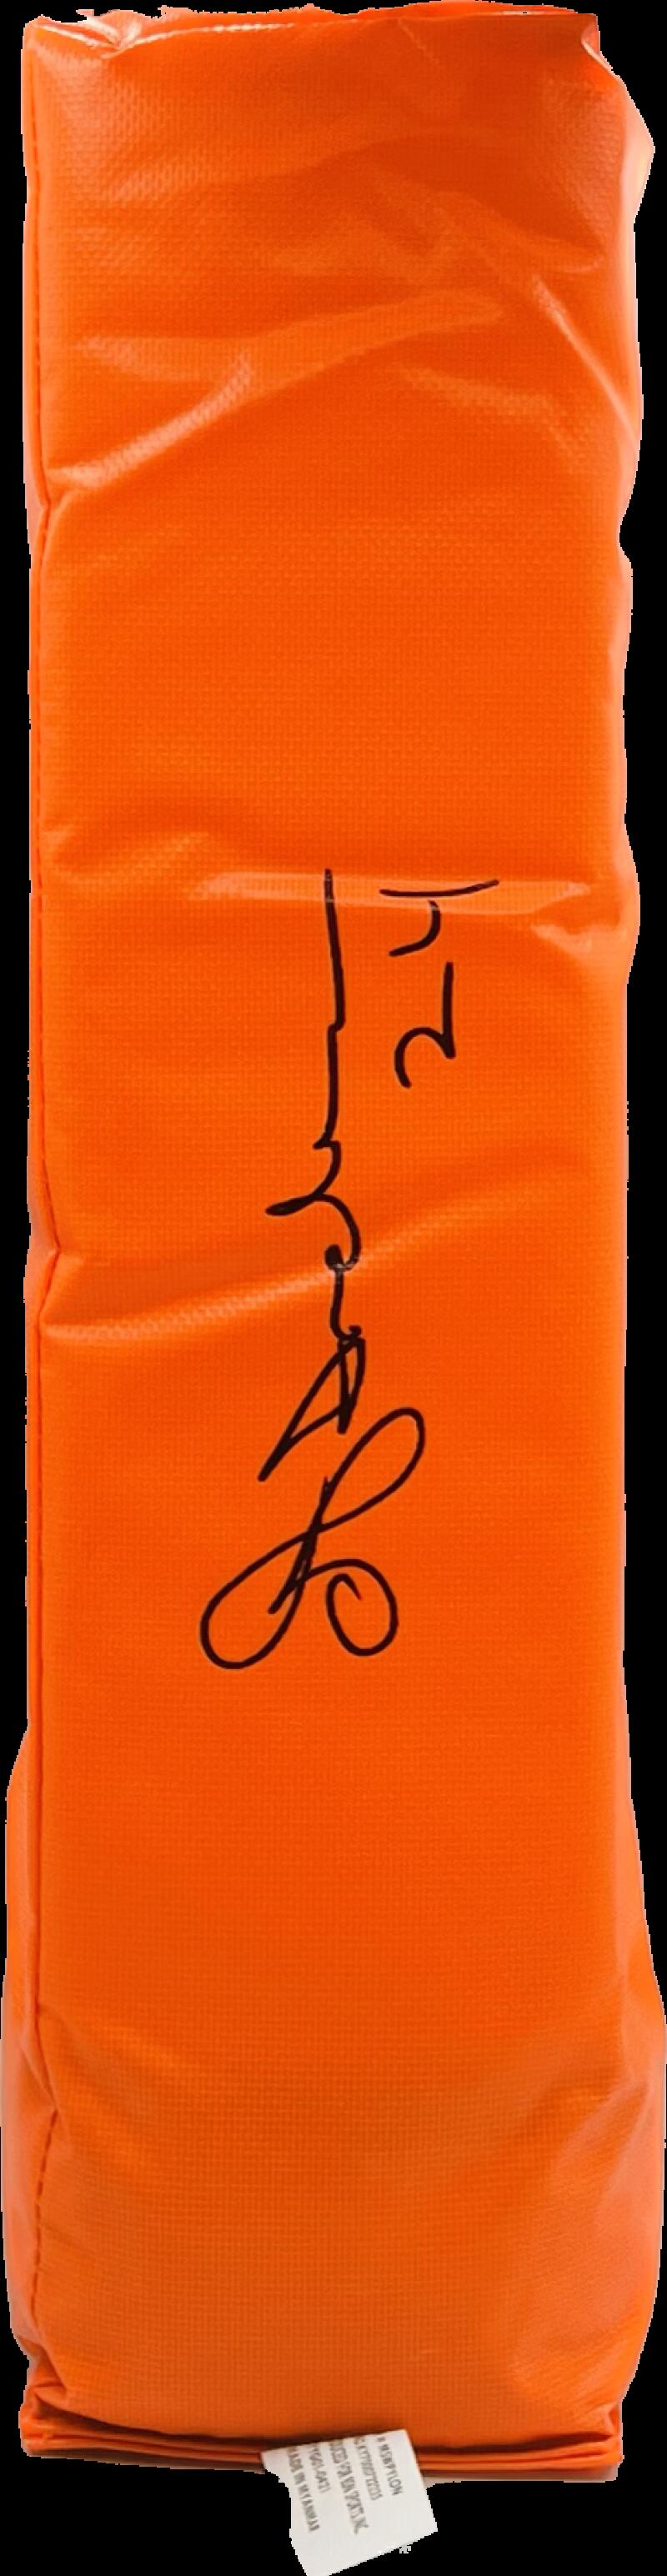 Ottis Anderson  Autograph Signed Orange Enzone Pylon Schwartz Authentic  Image 1